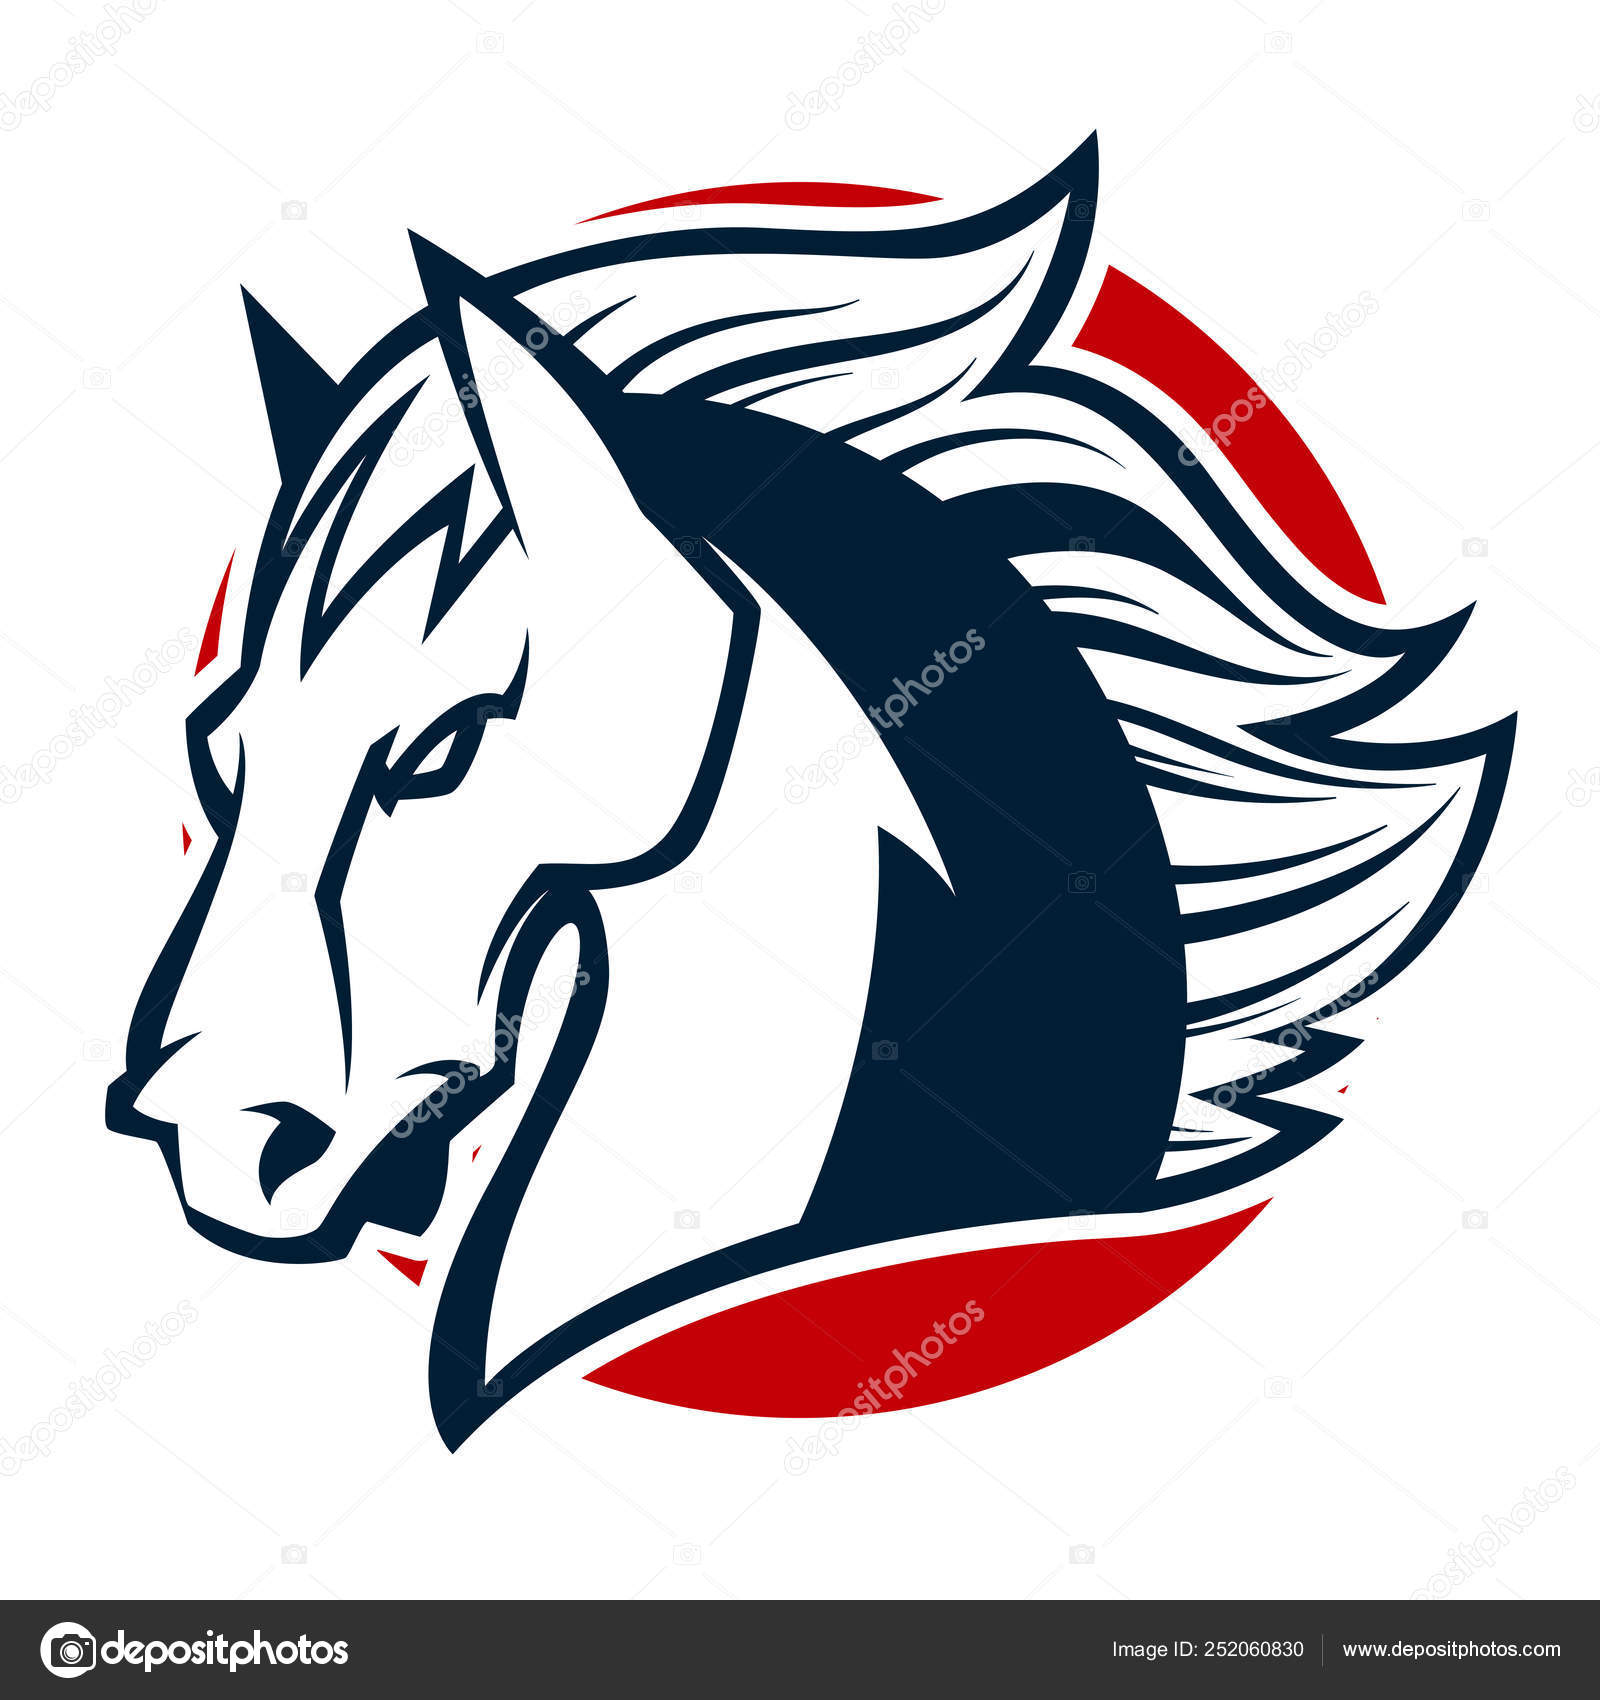 Horses Mascot  Mascot, Esports logo, Logo concept